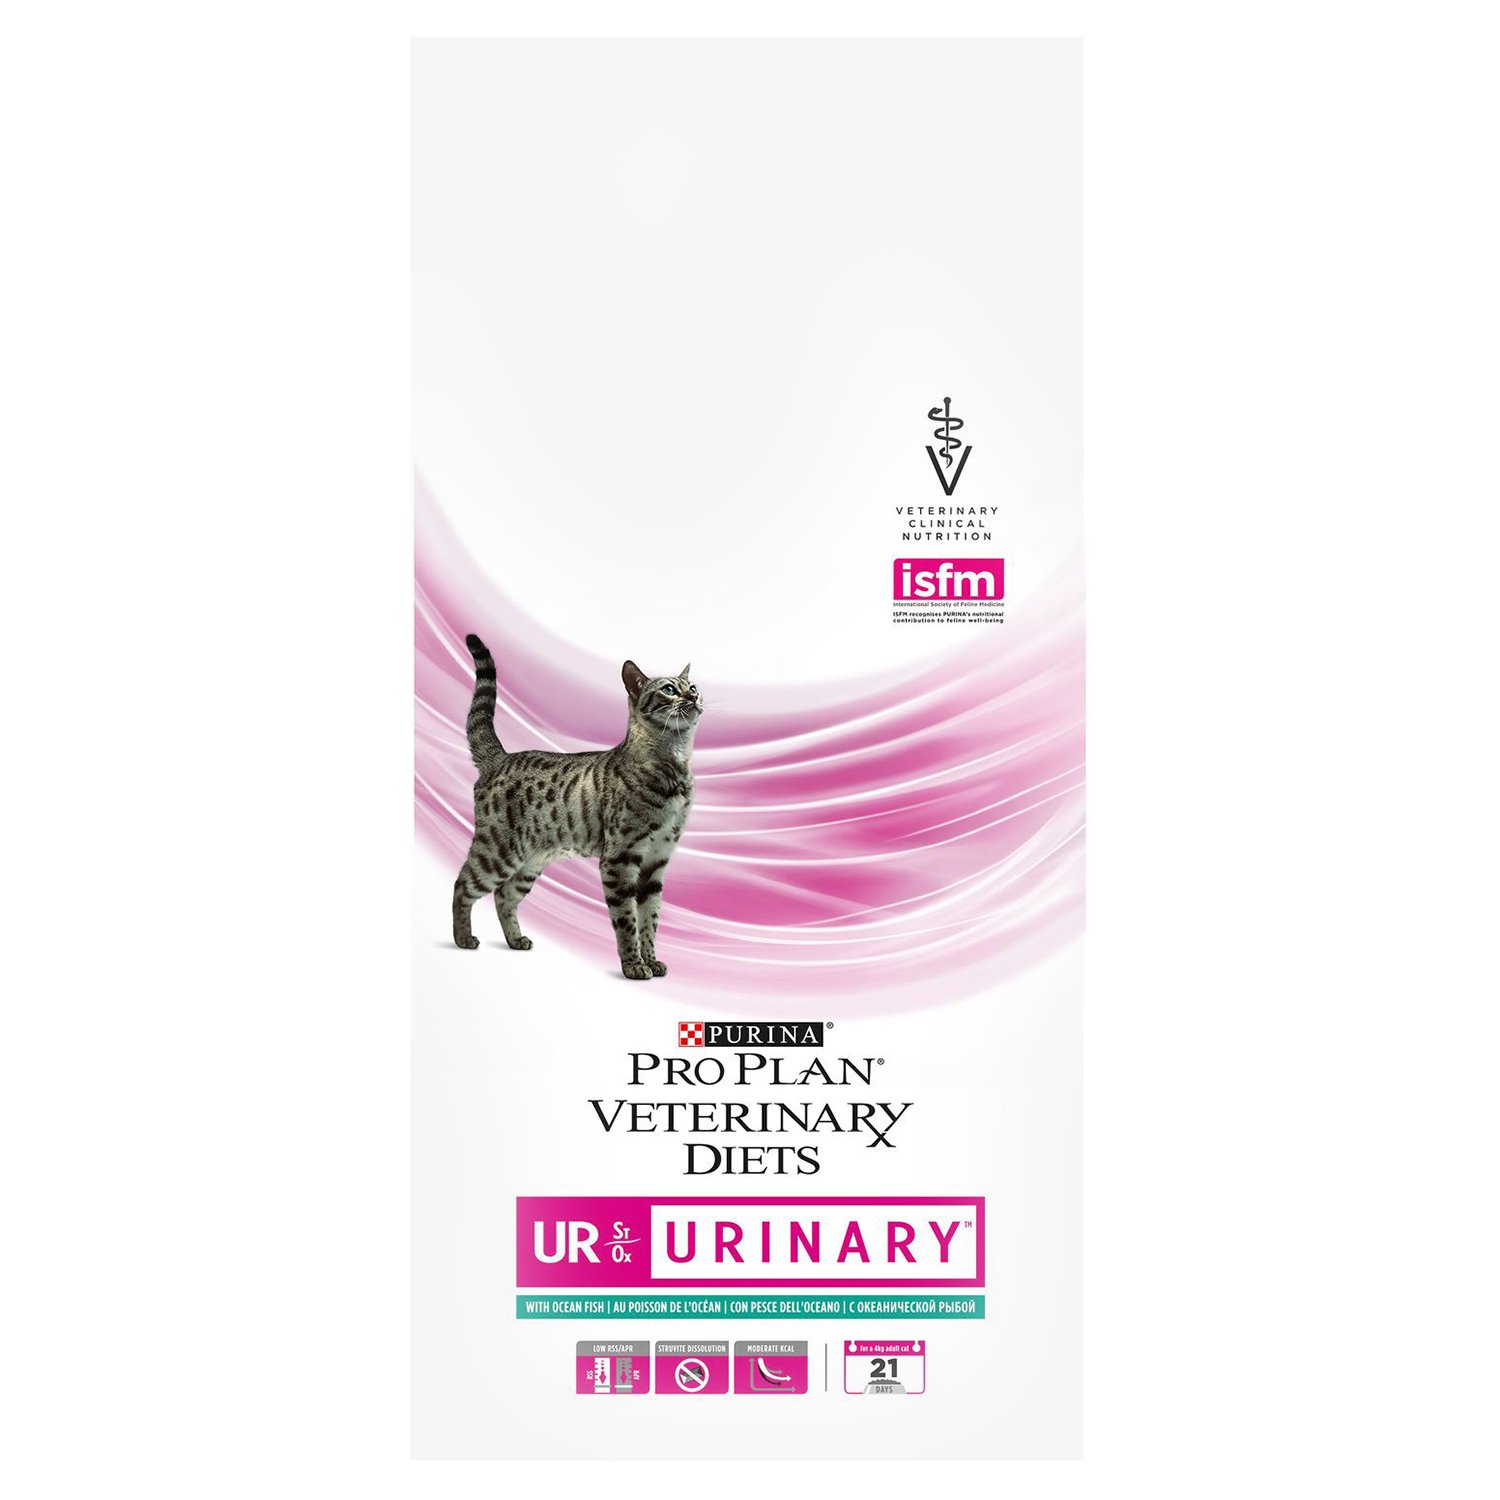 Купить корм проплан спб. Purina Urinary для кошек 1.5 кг. Корм Проплан Уринари для кошек. Pro Plan Urinary для кошек 1.5. Purina Pro Plan Veterinary Diets ur Urinary.